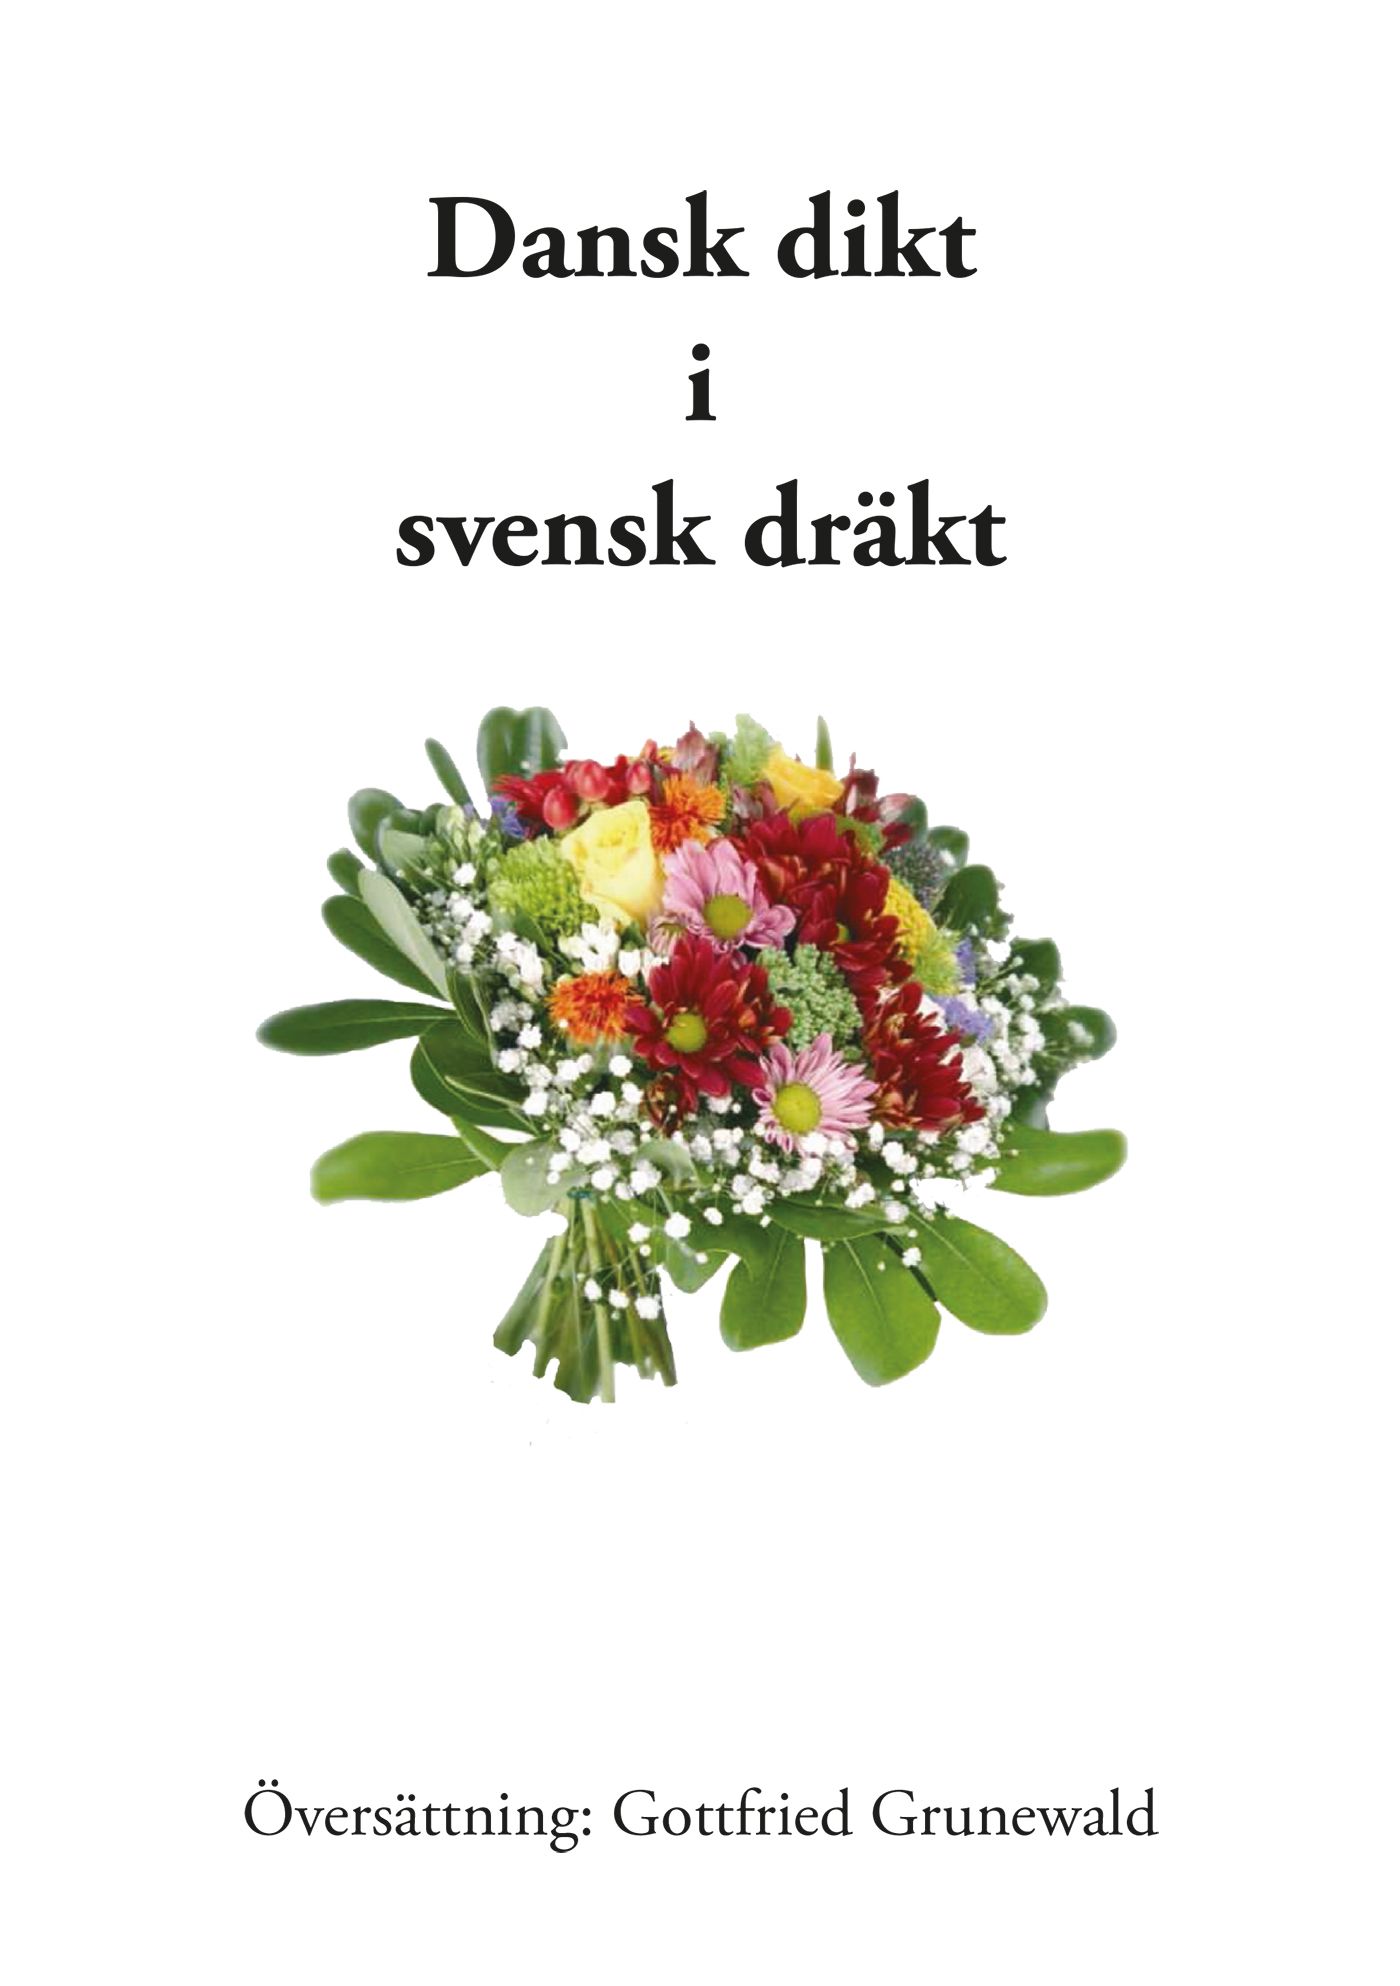 Dansk dikt i svensk dräkt, e-bog af Gottfried Grunewald